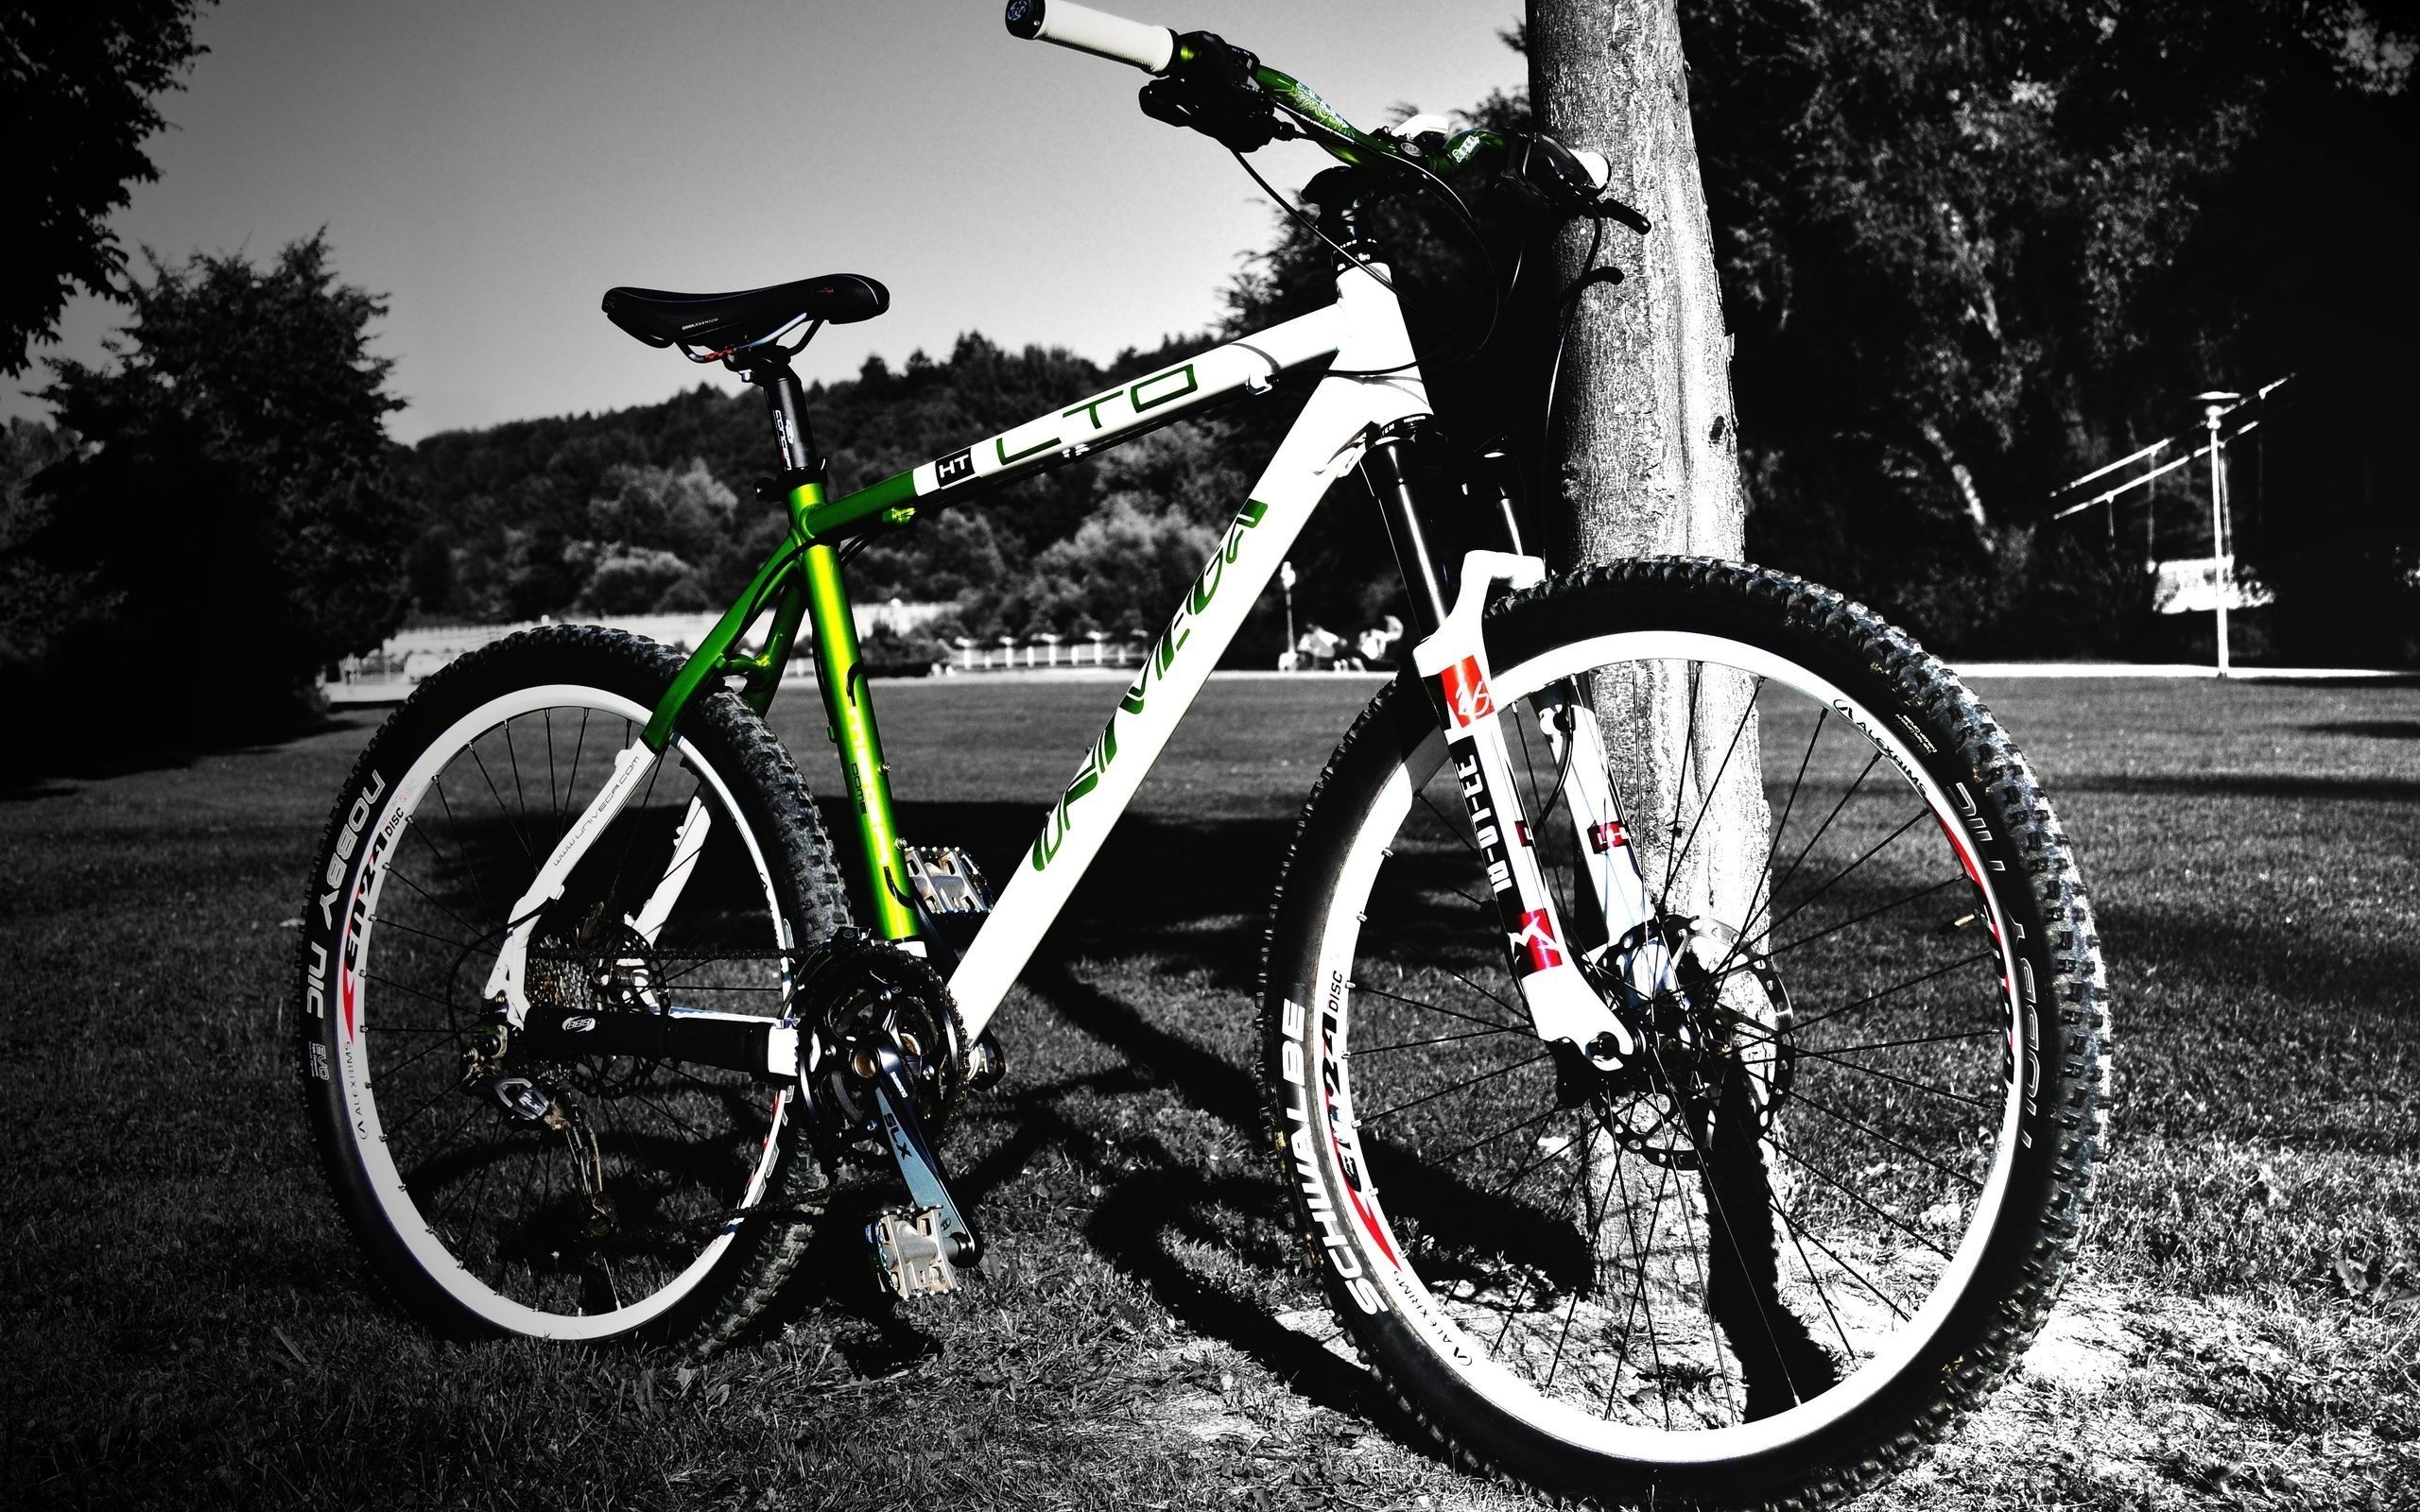 fond d'écran bisiklet,véhicule terrestre,vélo,roue de vélo,cadre de vélo,véhicule